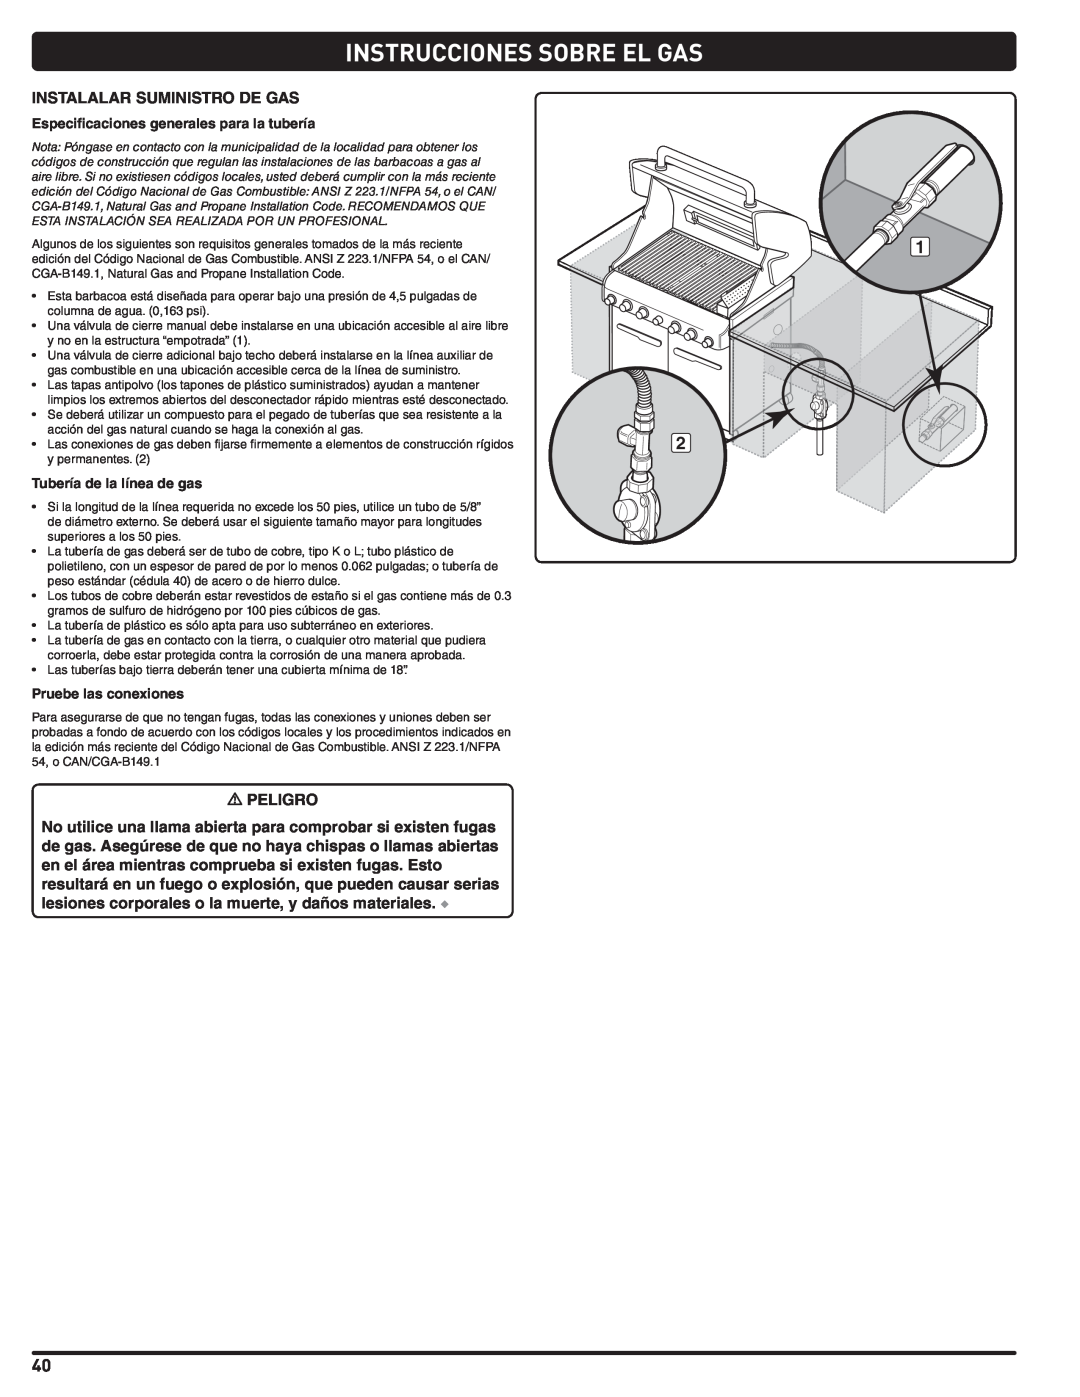 Weber 56576 manual Instrucciones Sobre El Gas, Especificaciones generales para la tubería, Tubería de la línea de gas 